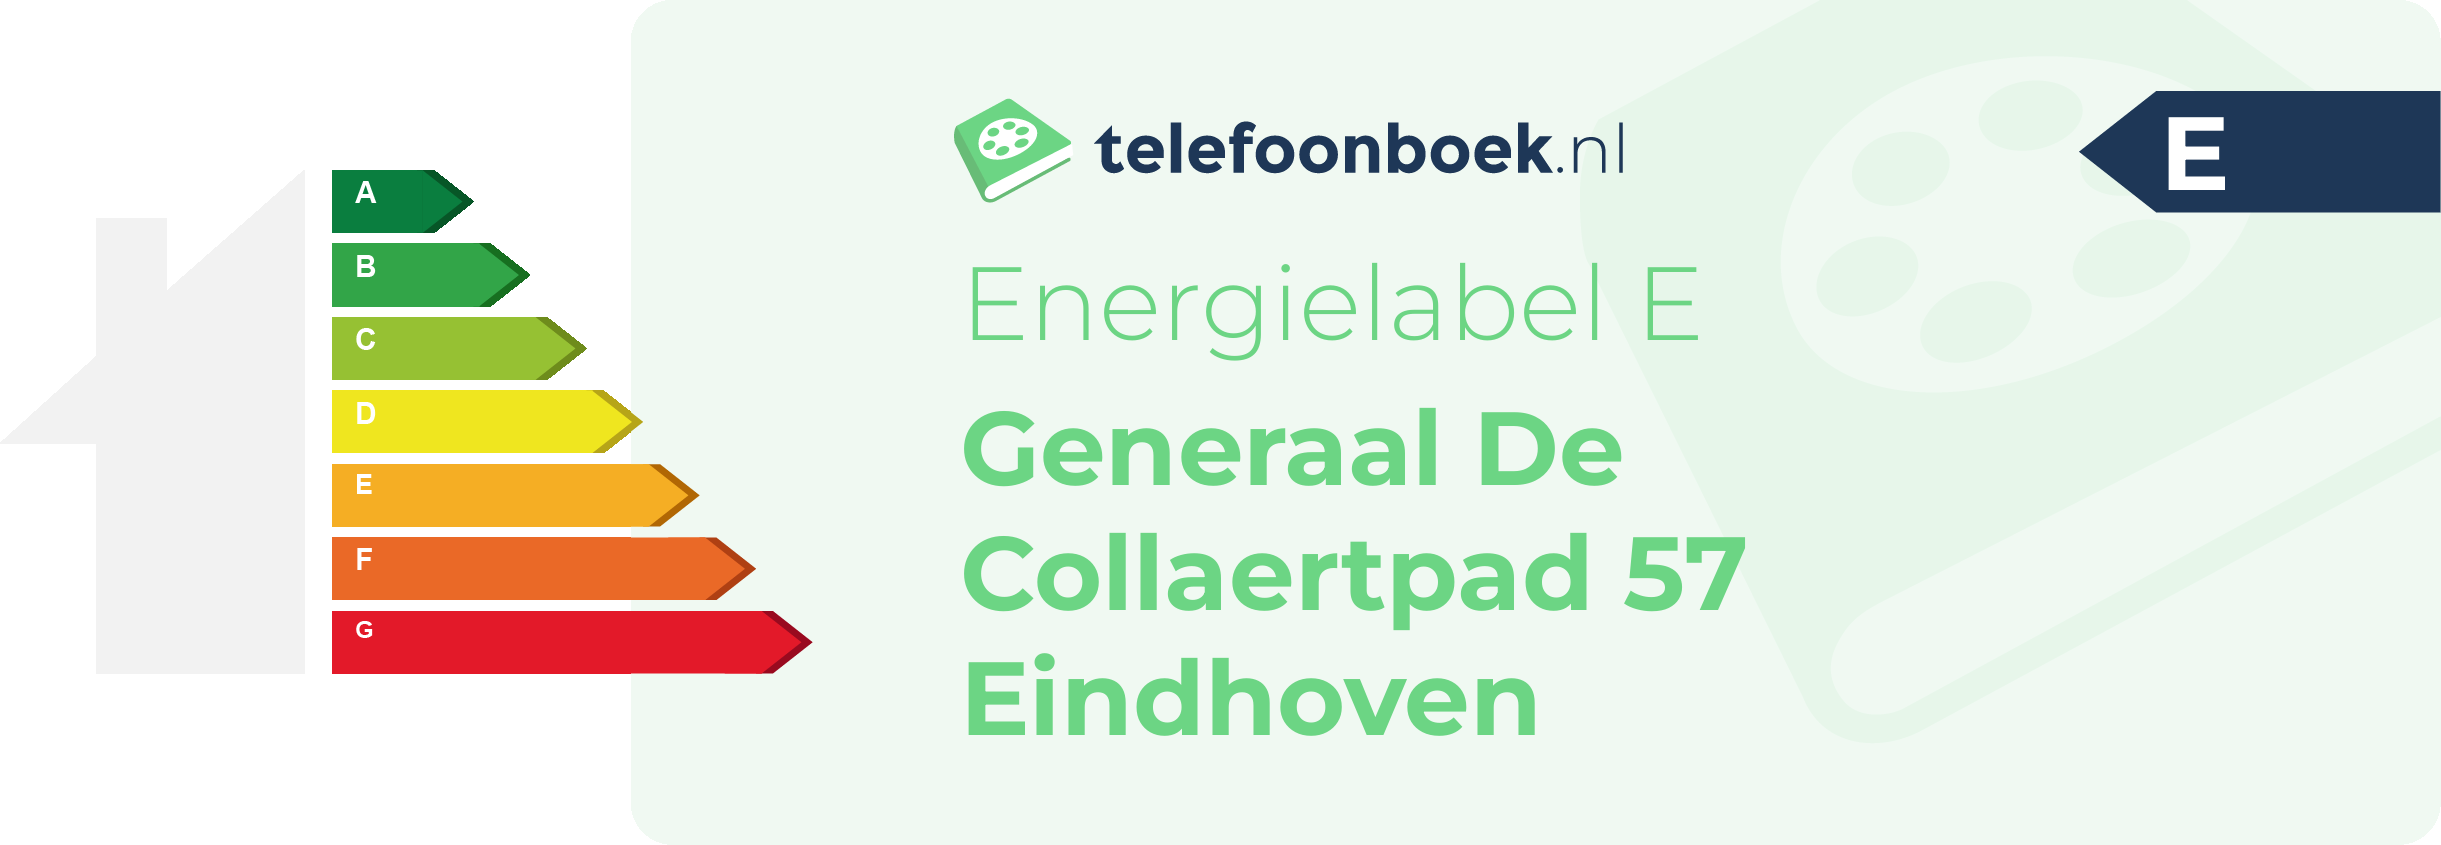 Energielabel Generaal De Collaertpad 57 Eindhoven